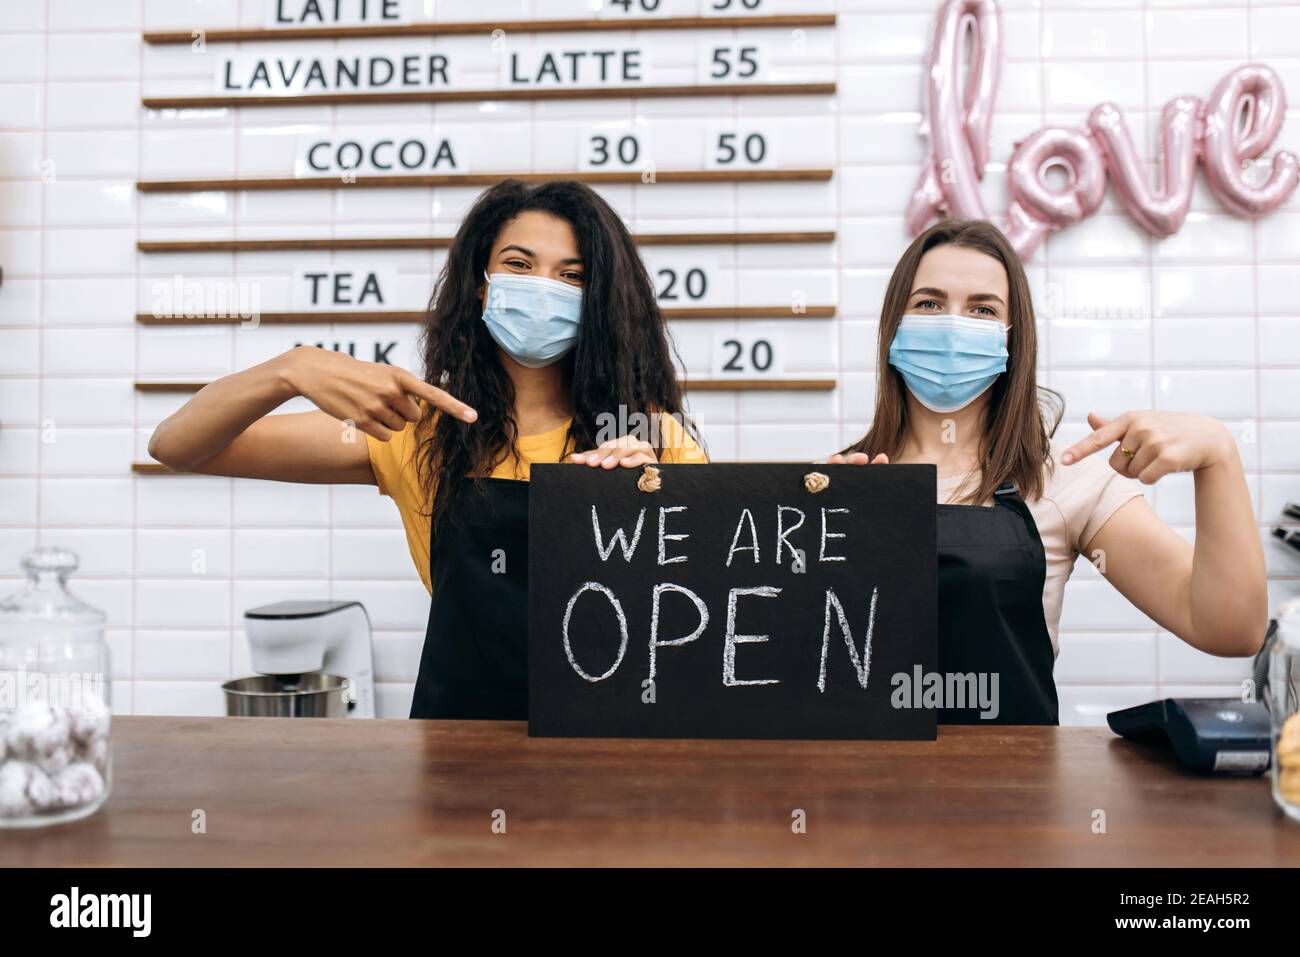 Zwei zufriedene weibliche Kellnerin ein Café oder Restaurant, afroamerikanisch und kaukasisch, steht mit einem Schild, DAS WIR HINTER der Theke mit medizinischen Masken ÖFFNEN Stockfoto